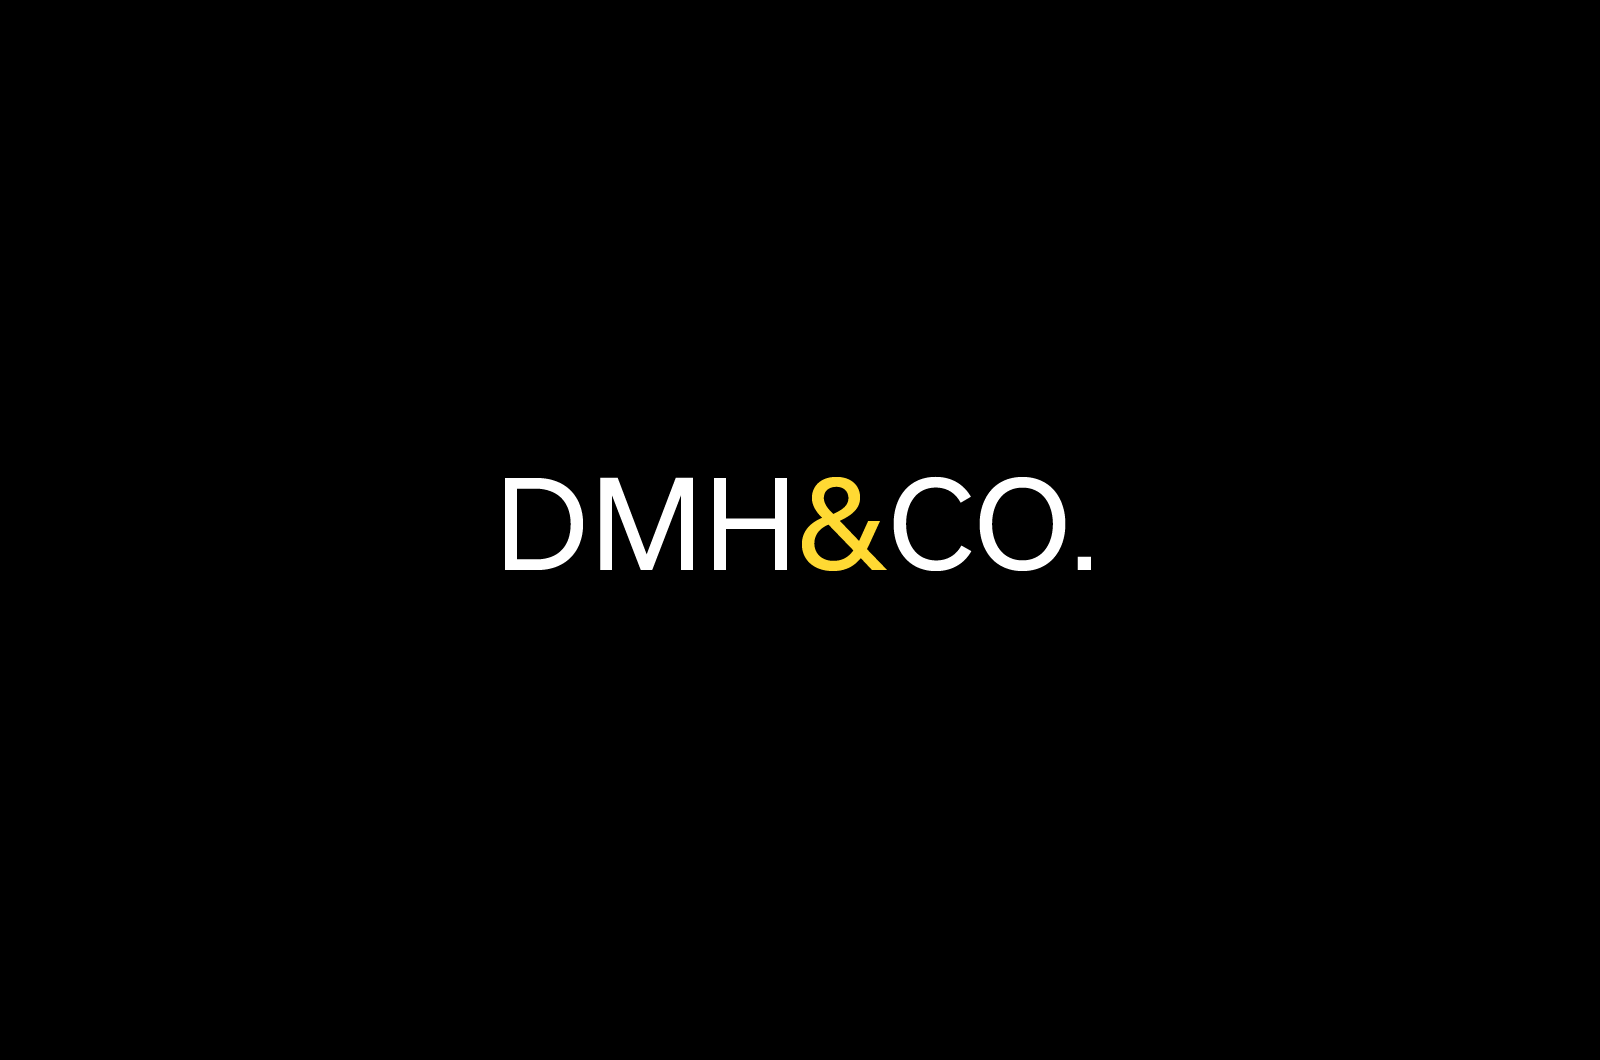 DMH&CO Brand 01